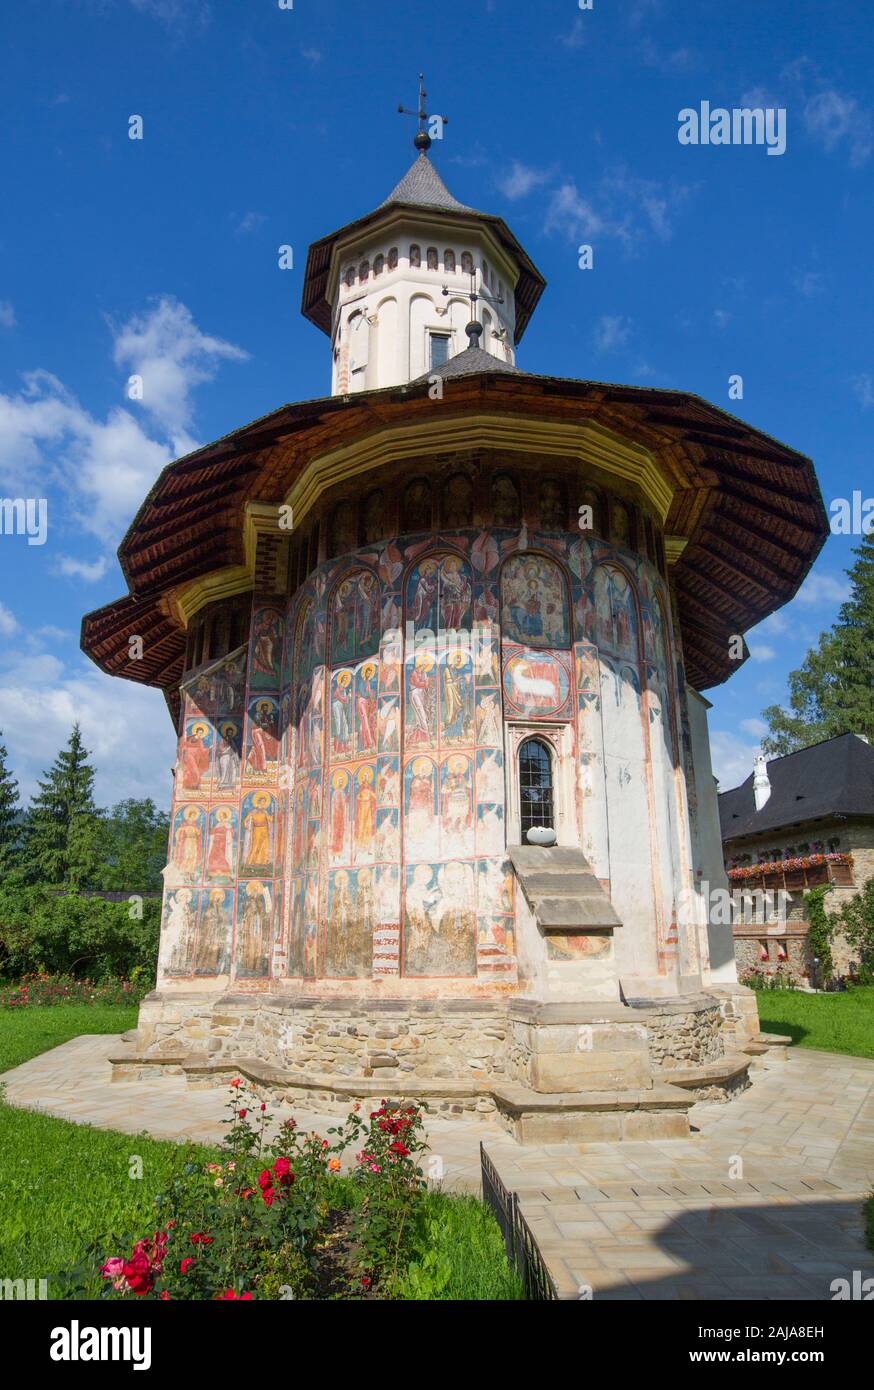 Moldovita Monastery, 1532, Painted Monasteries, UNESCO World Heritage Site, Vatra Moldovitei, Suceava County, Romania Stock Photo